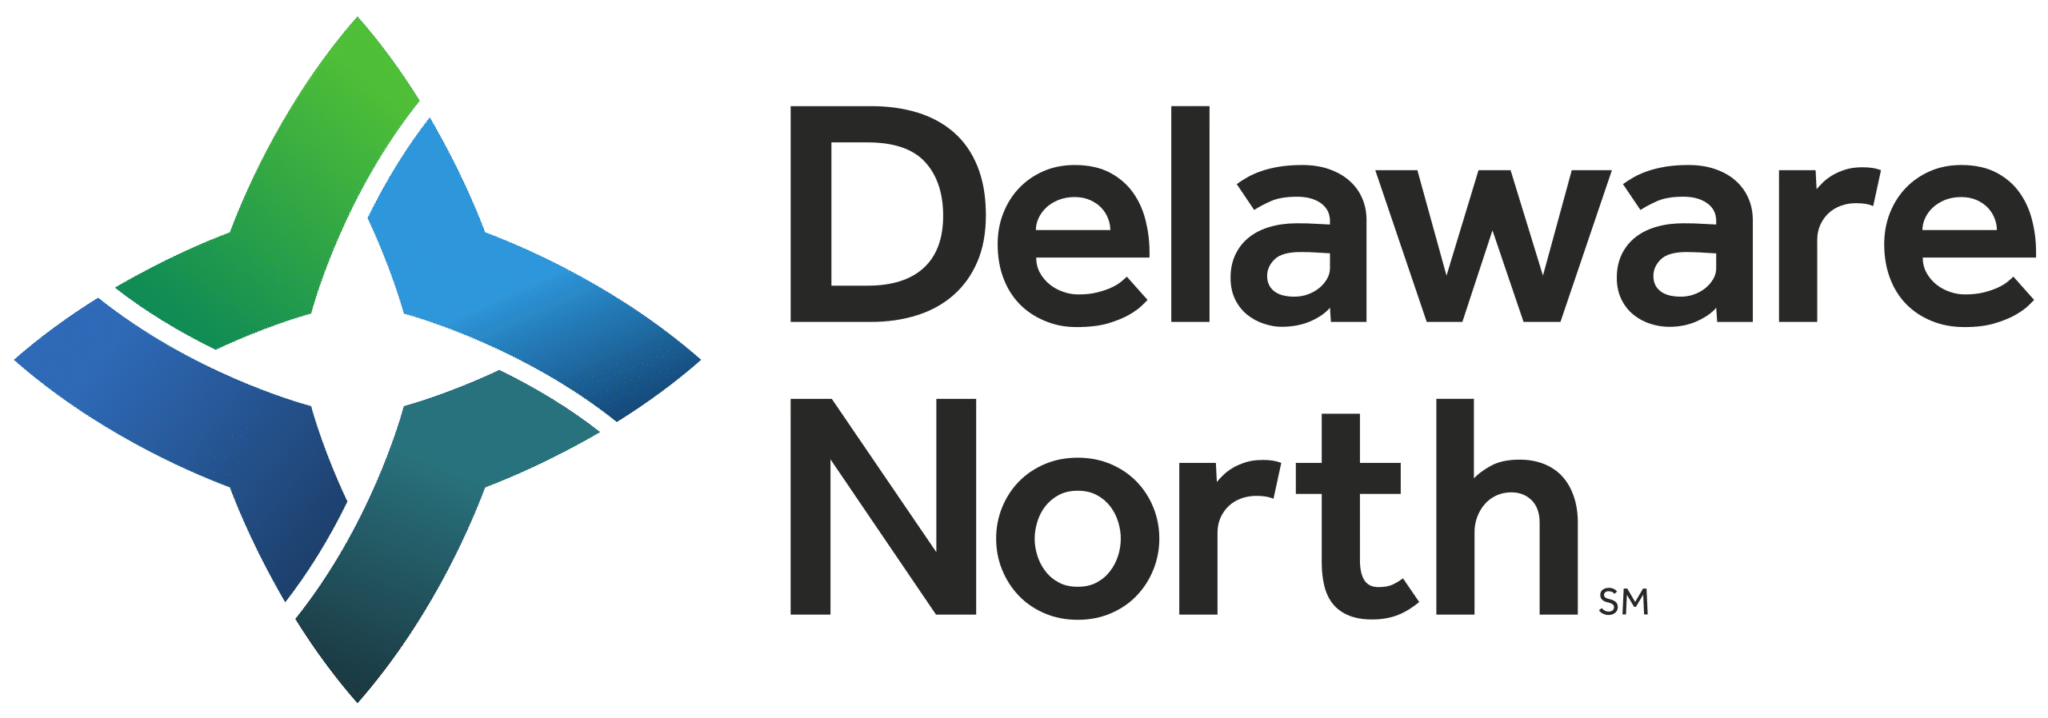 Logotipo de Delaware N